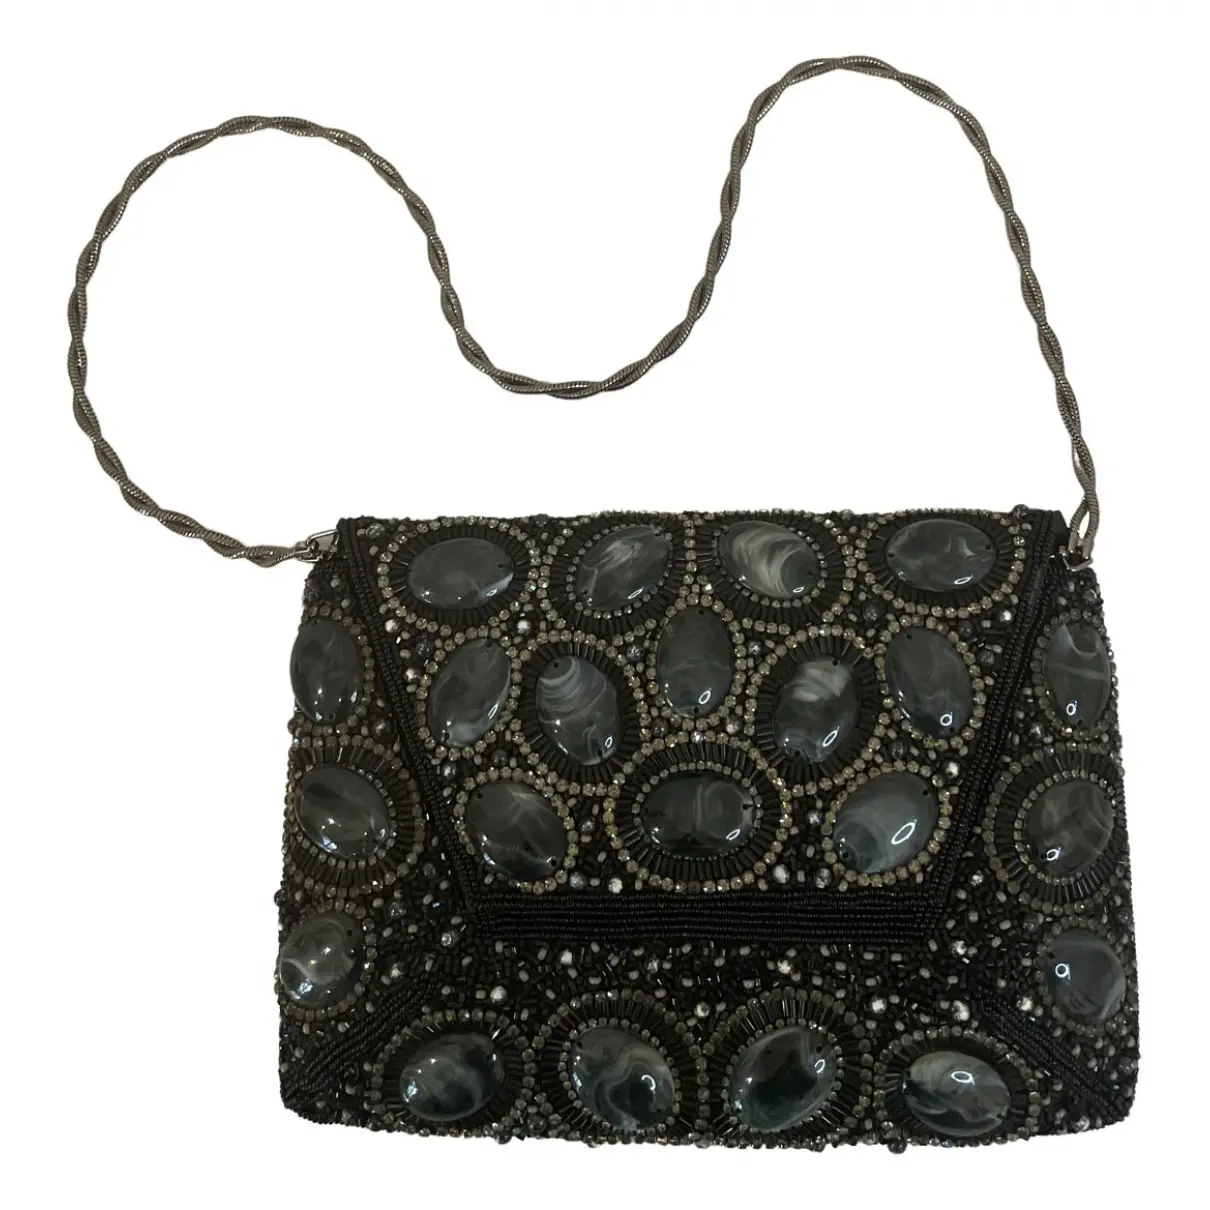 Leather handbag Stuart Weitzman